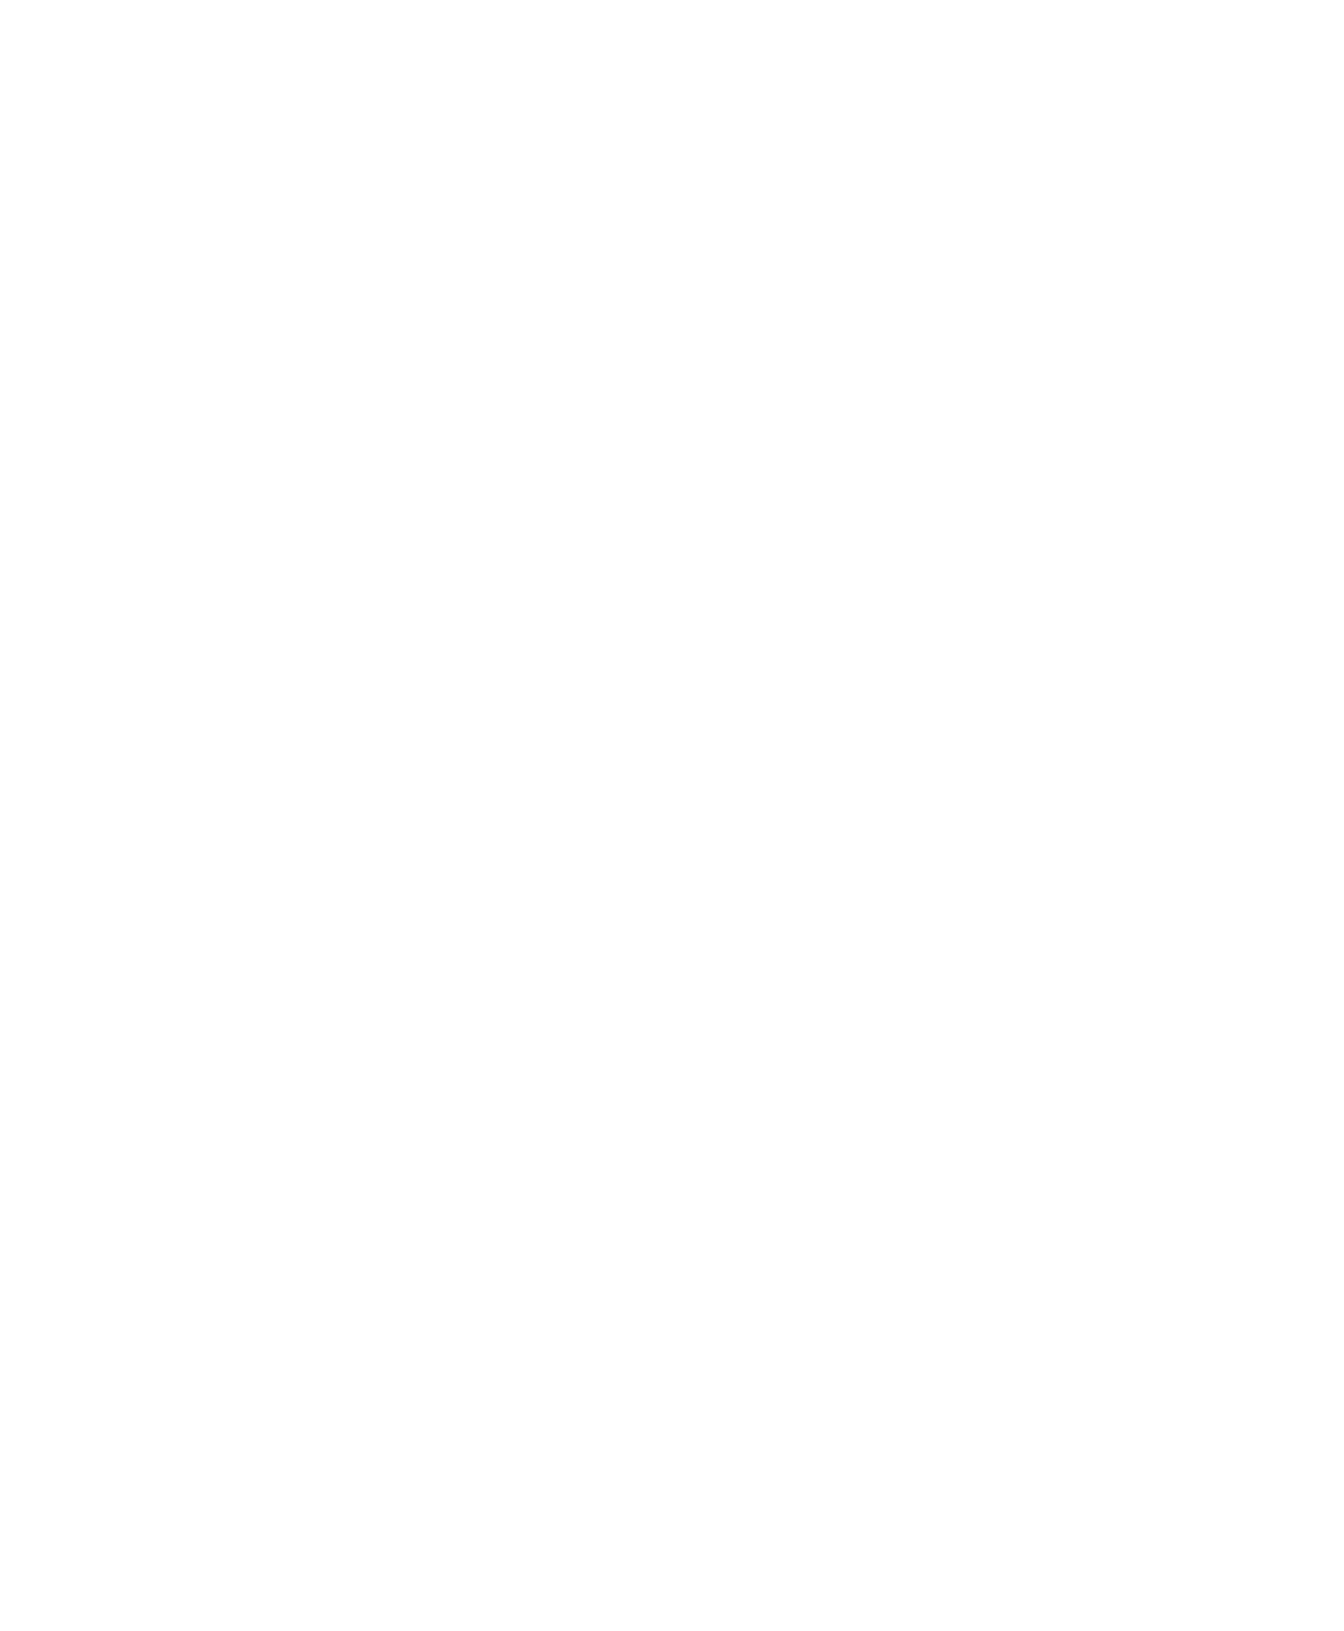 G-bits Network Technology  logo large for dark backgrounds (transparent PNG)